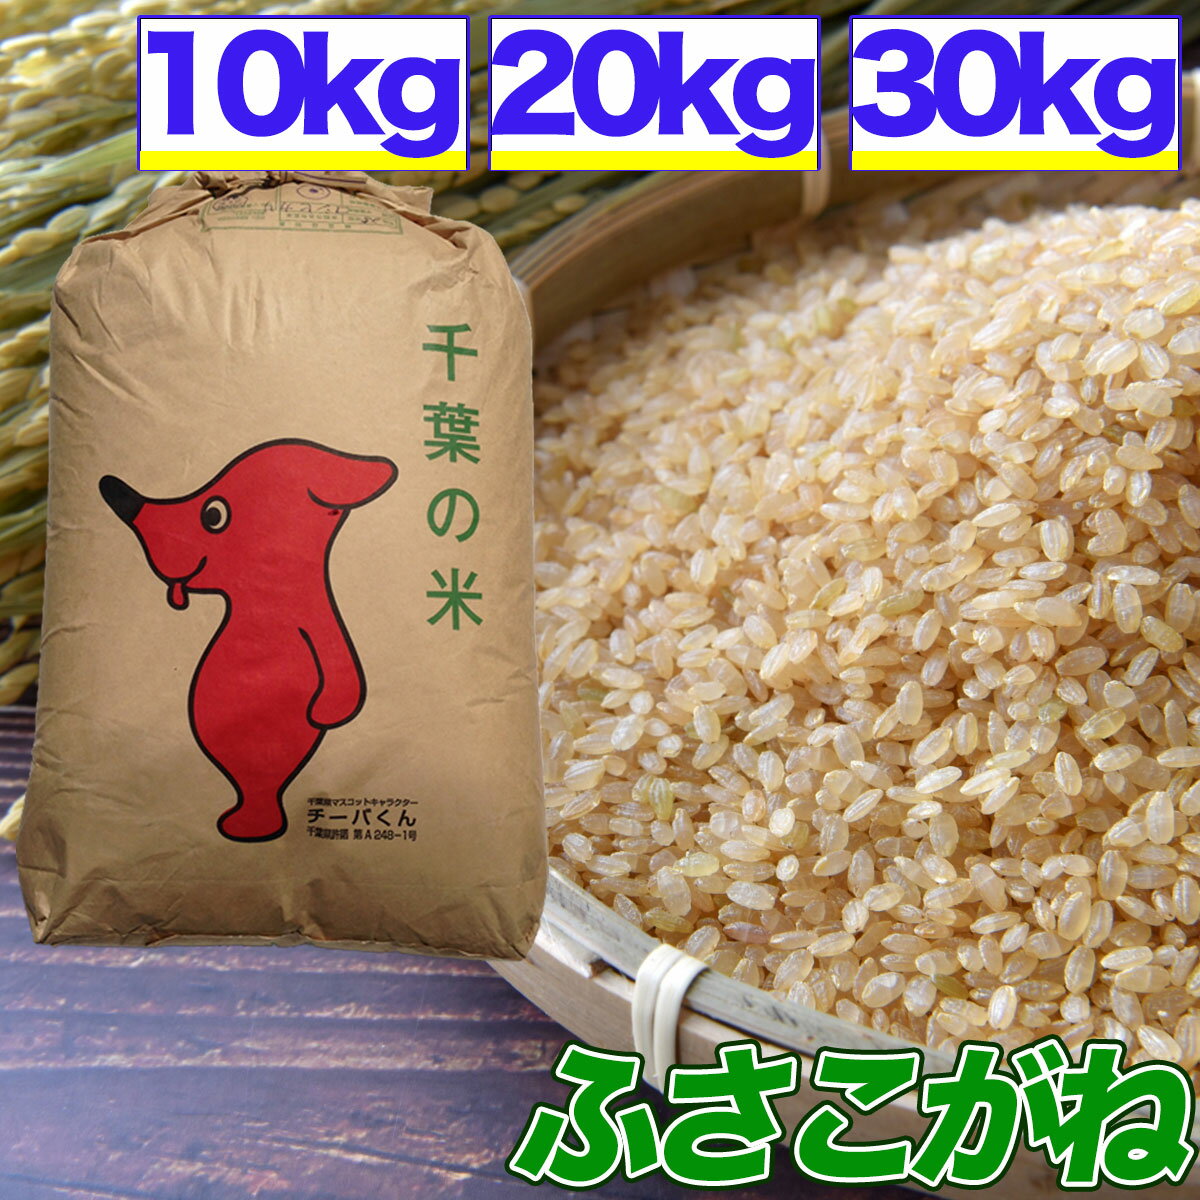 令和5年産 ふさこがね 10kg 20kg 30kg 玄米 選別済 玄米食でも安心の選別済玄米 送料無料 精米無料 精米 白米 発送可 残留農薬検査済 残留農薬不検出